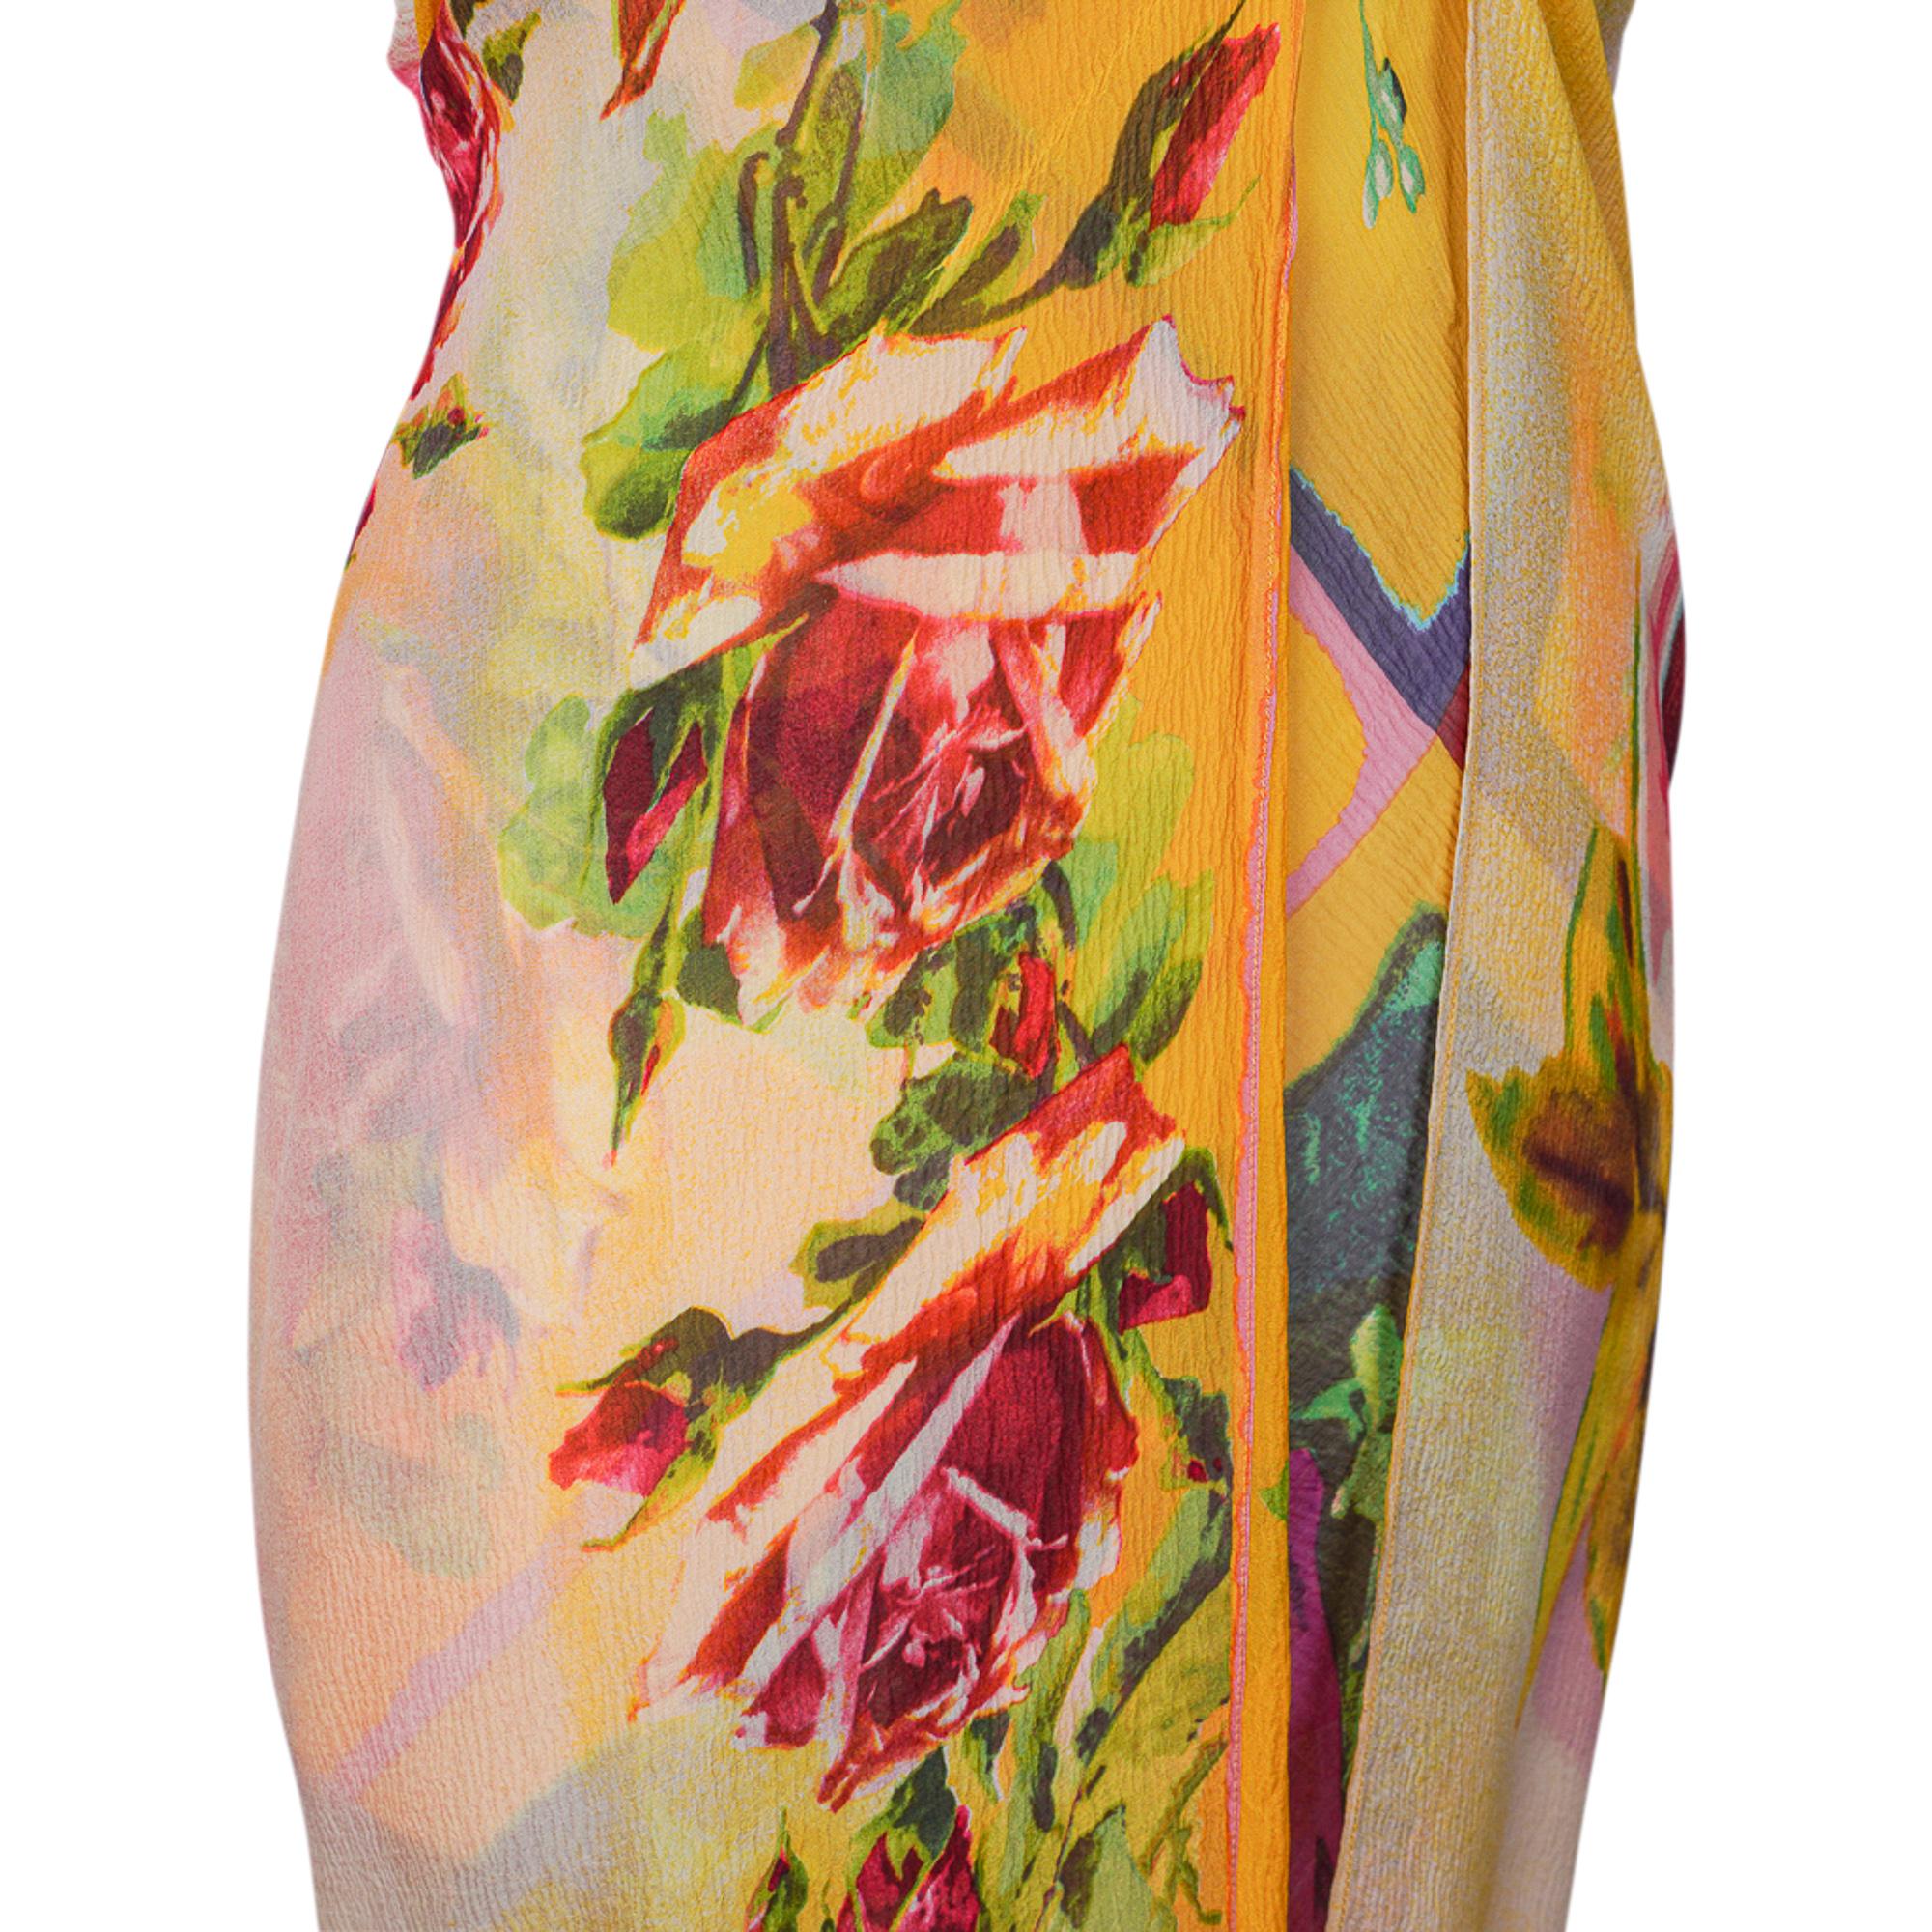 jean paul gaultier flower dress